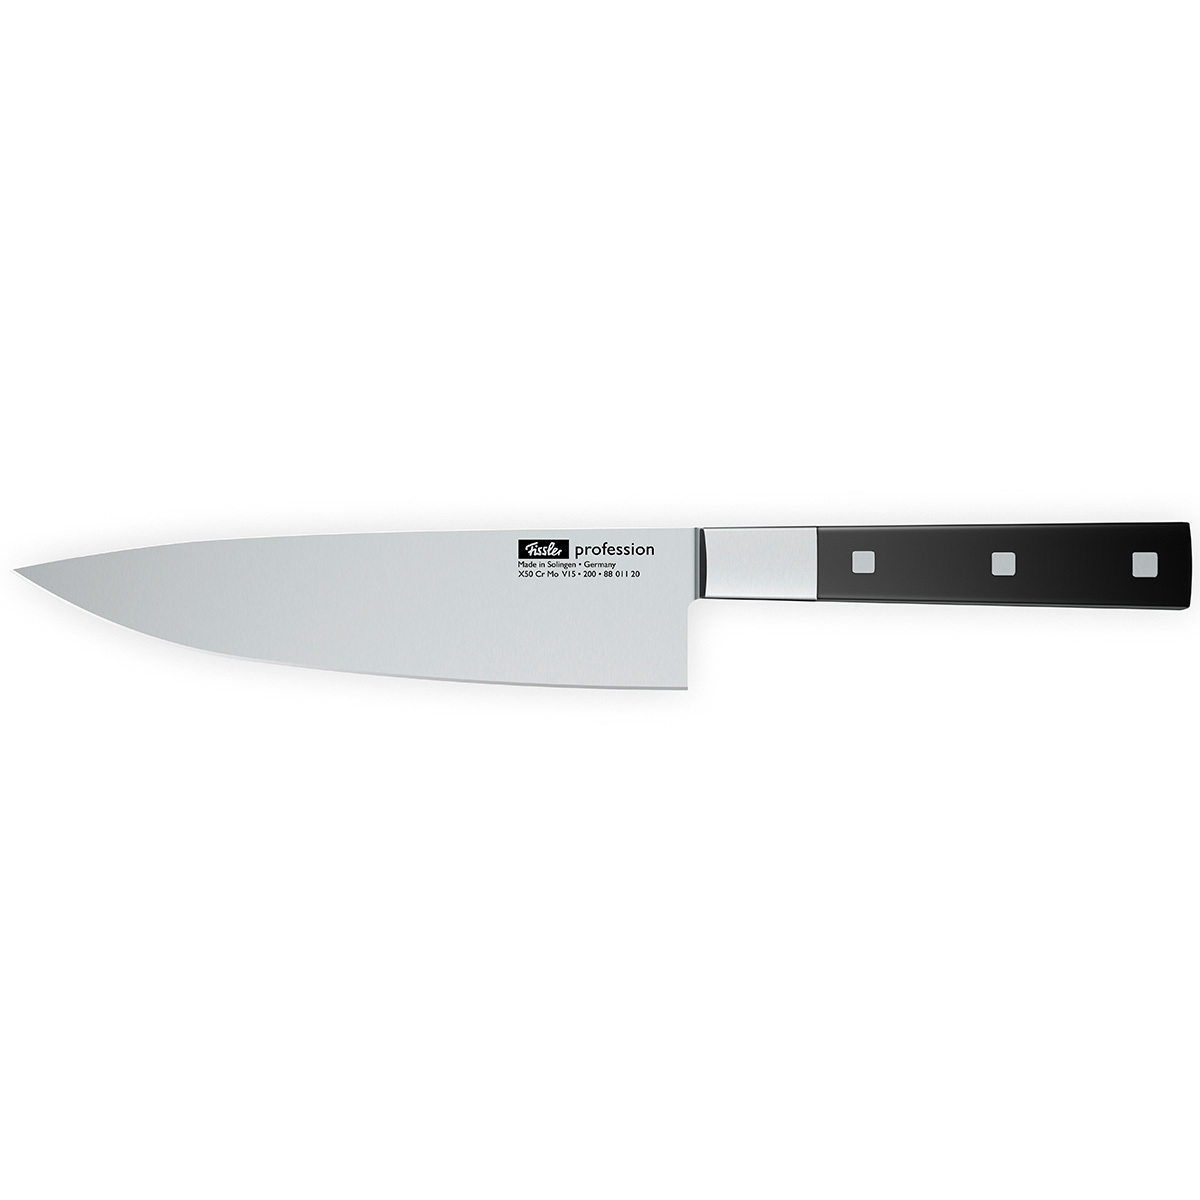 Нож поварской Fissler Profession 200 мм 8801120 - 1